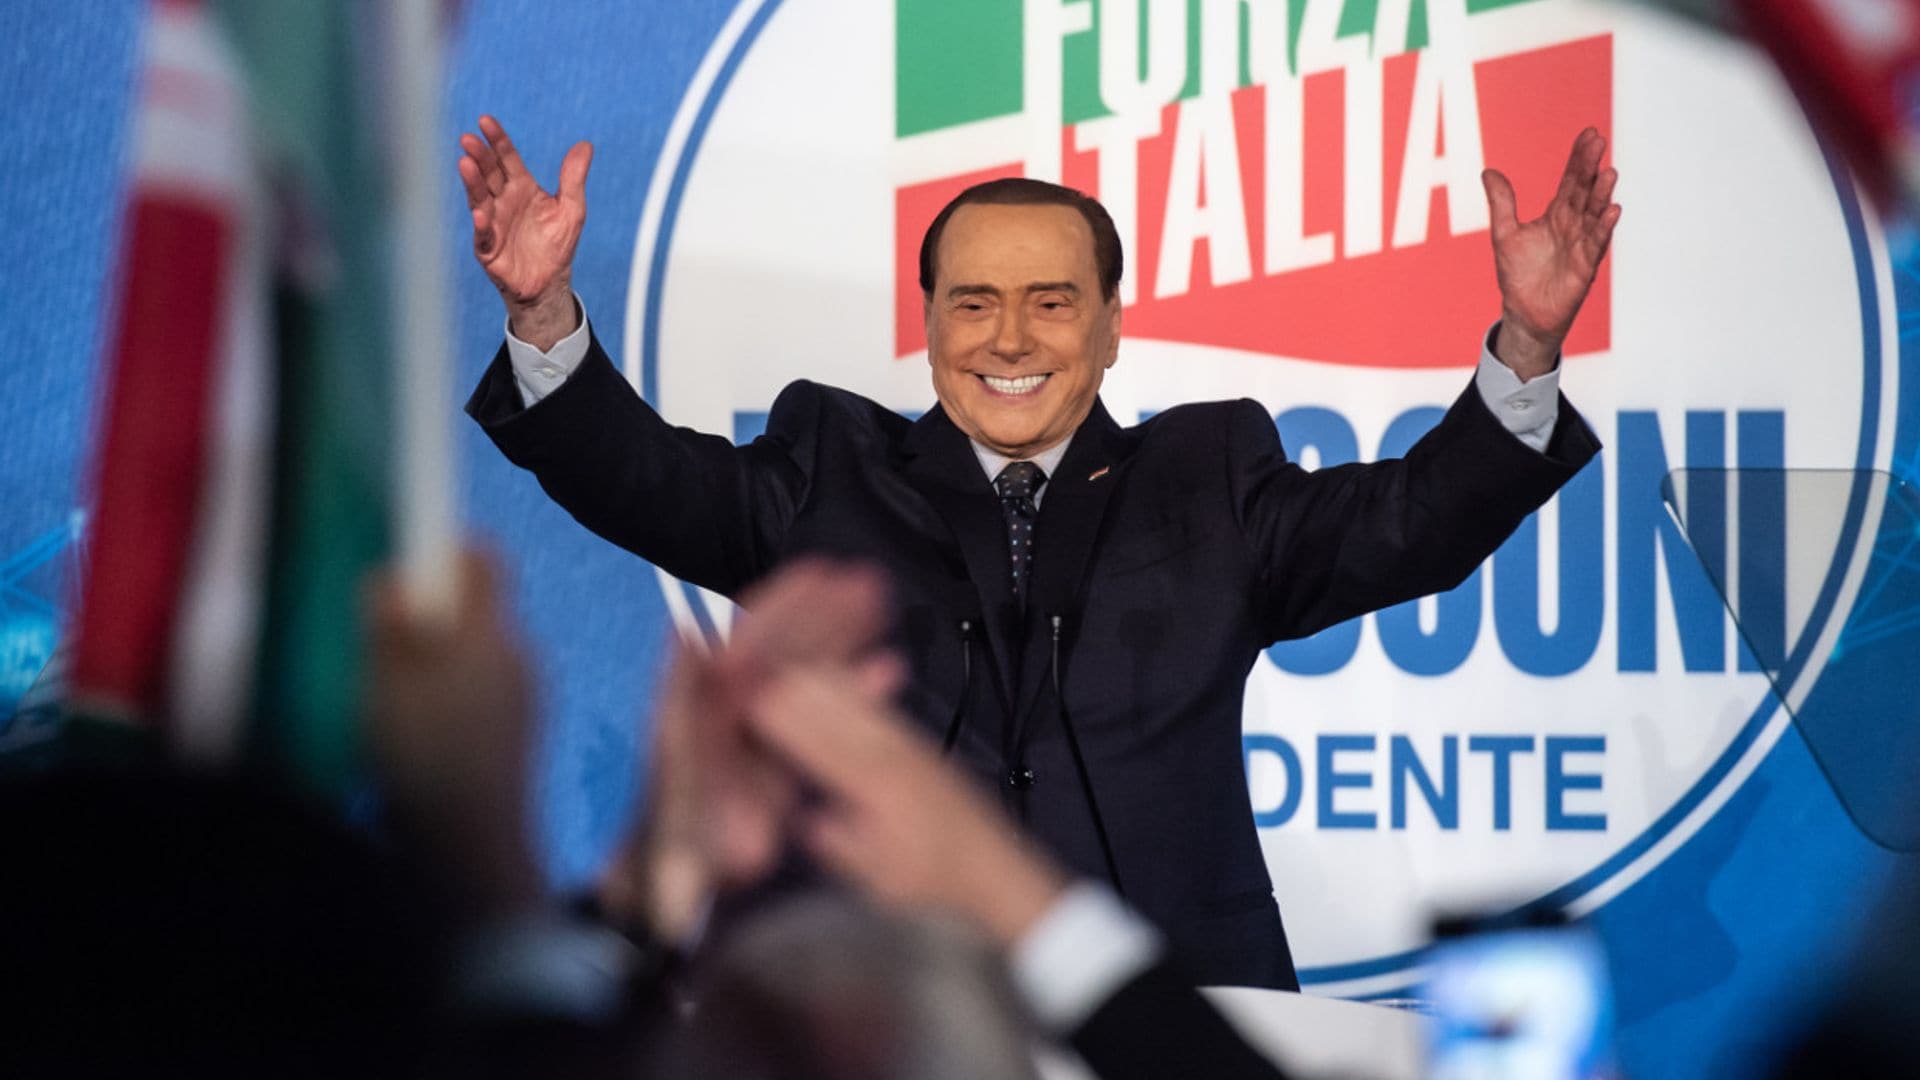 La bandera de Italia y la dieta de Silvio Berlusconi, una leyenda llena de realidad